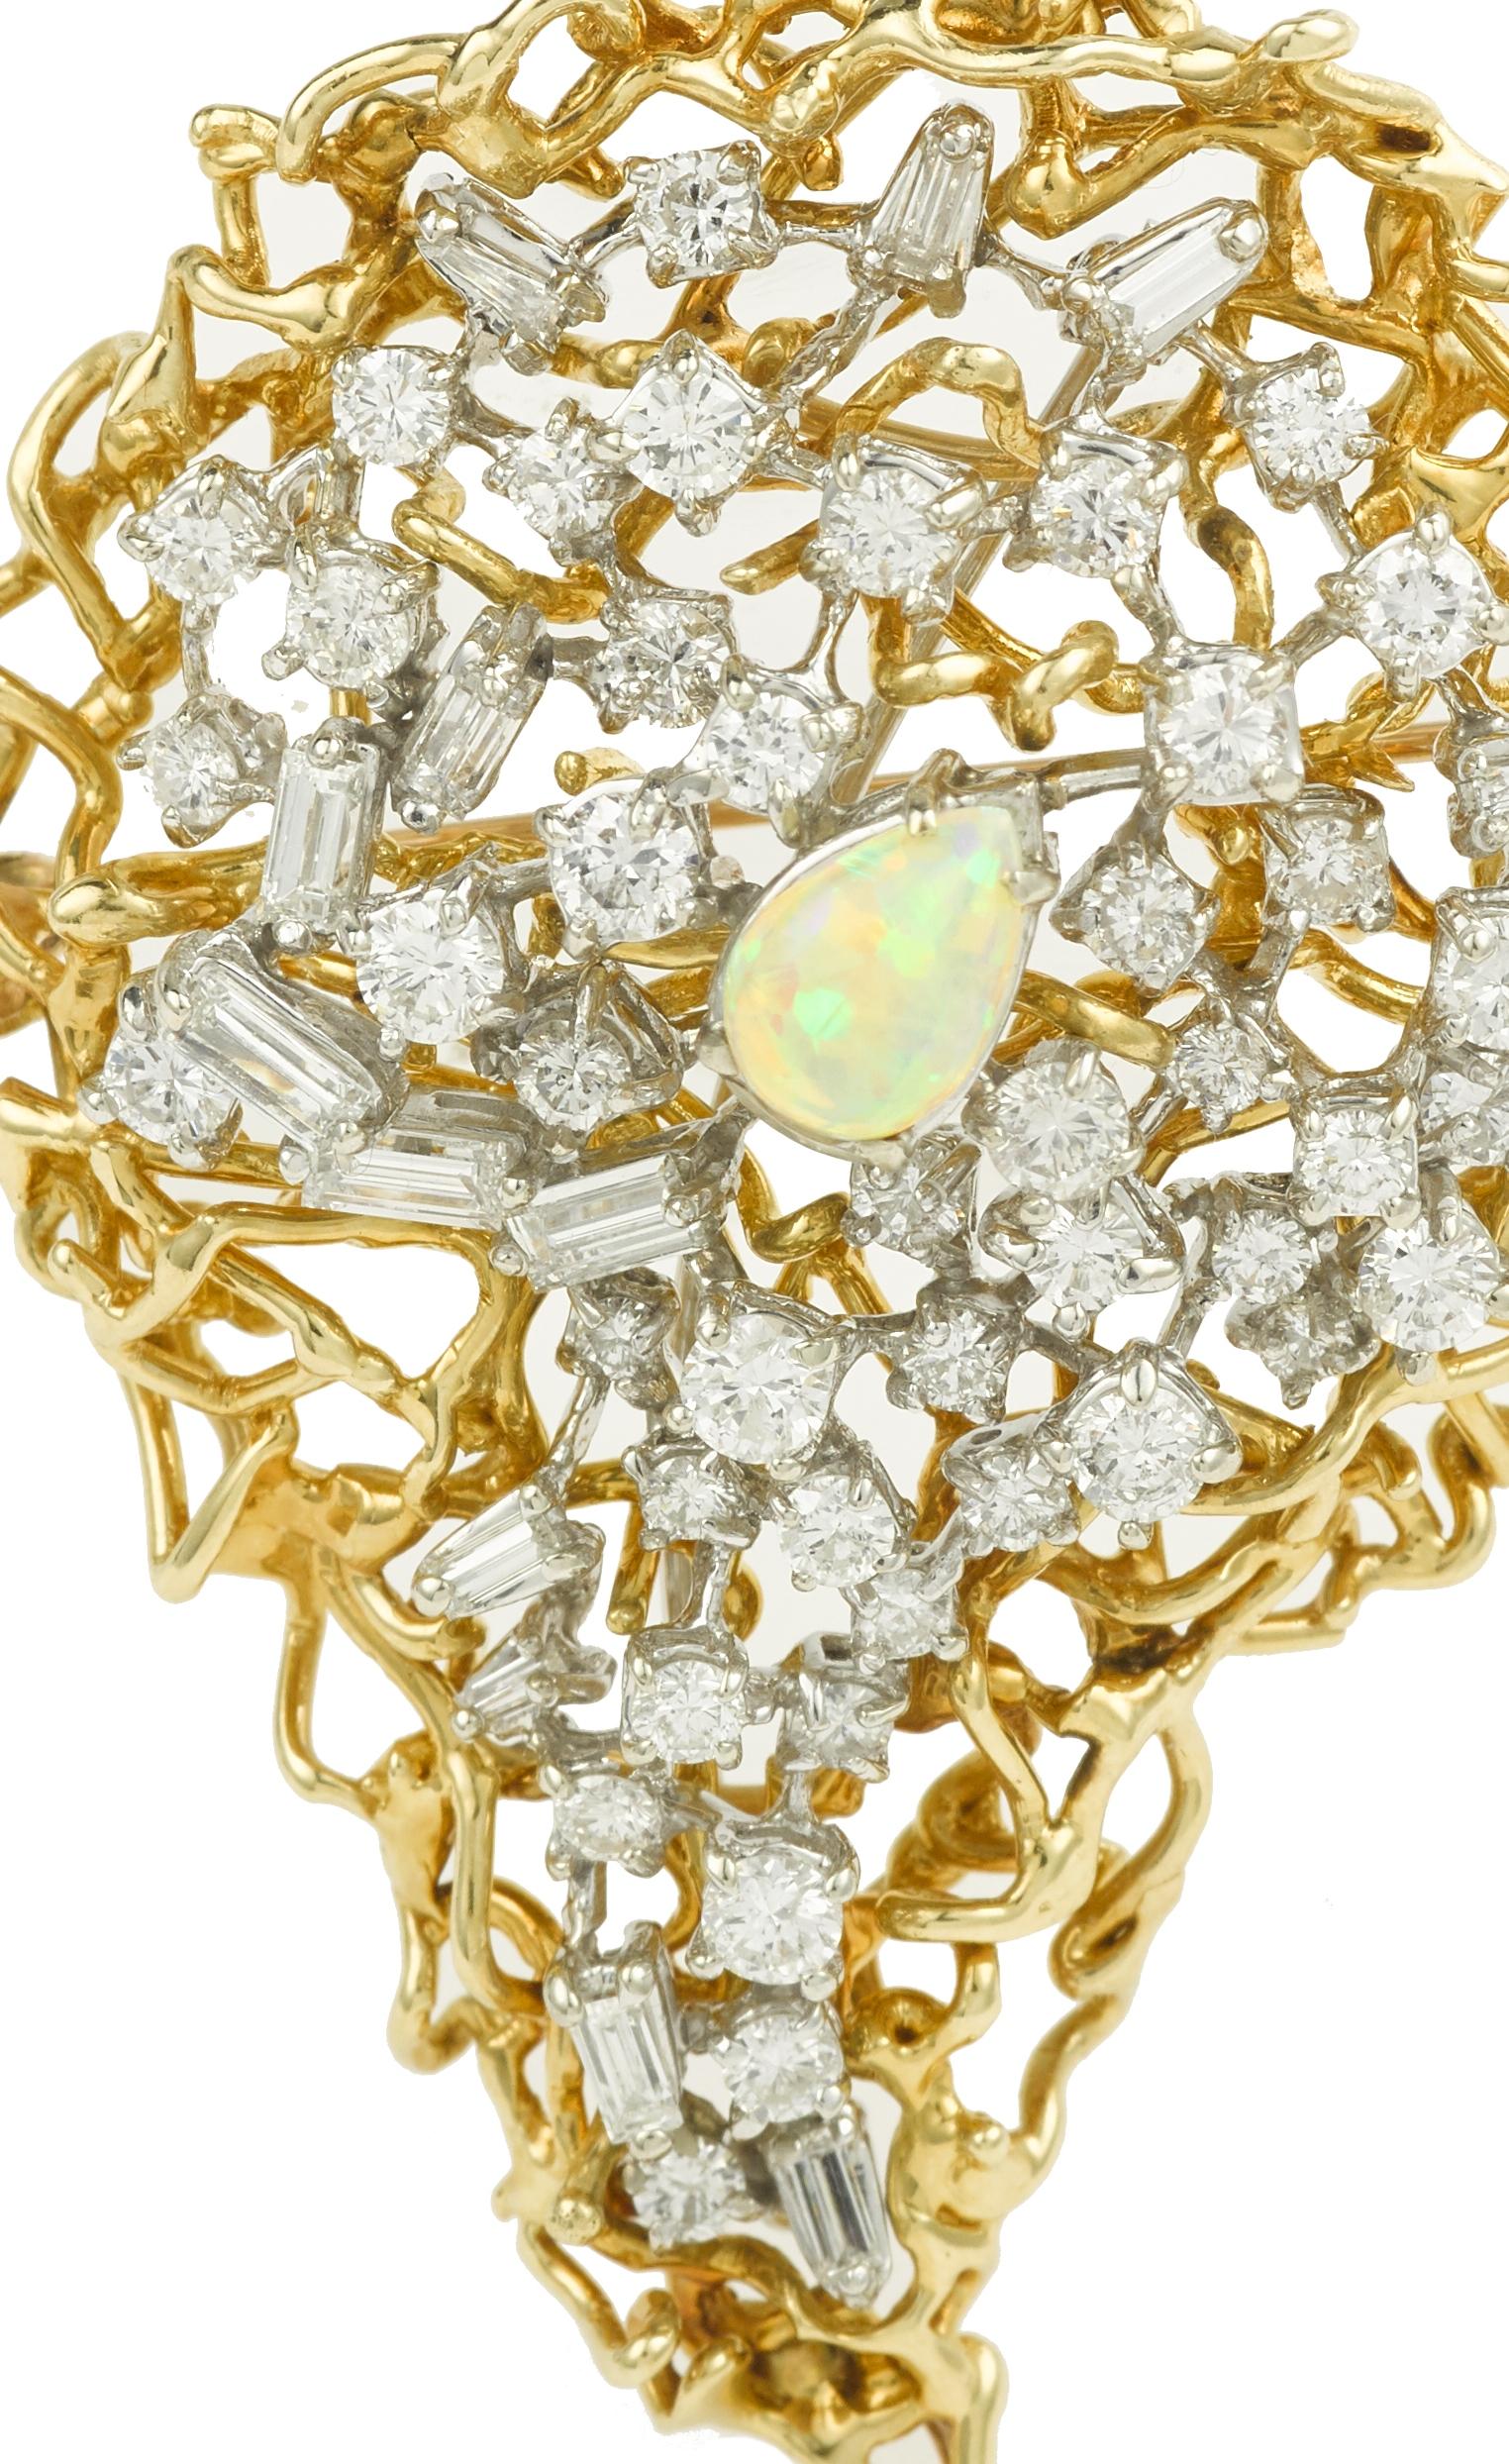 Eine wichtige Brosche/Anhänger aus Gelbgold, besetzt mit einem wunderschönen birnenförmigen Opal von ca. 0,42 Karat.

Er ist mit etwa 4,61 Karat Diamanten im Baguette- und Brillantschliff besetzt.

Größe der Brosche: 61 x 43 mm (2,402 x 1,693